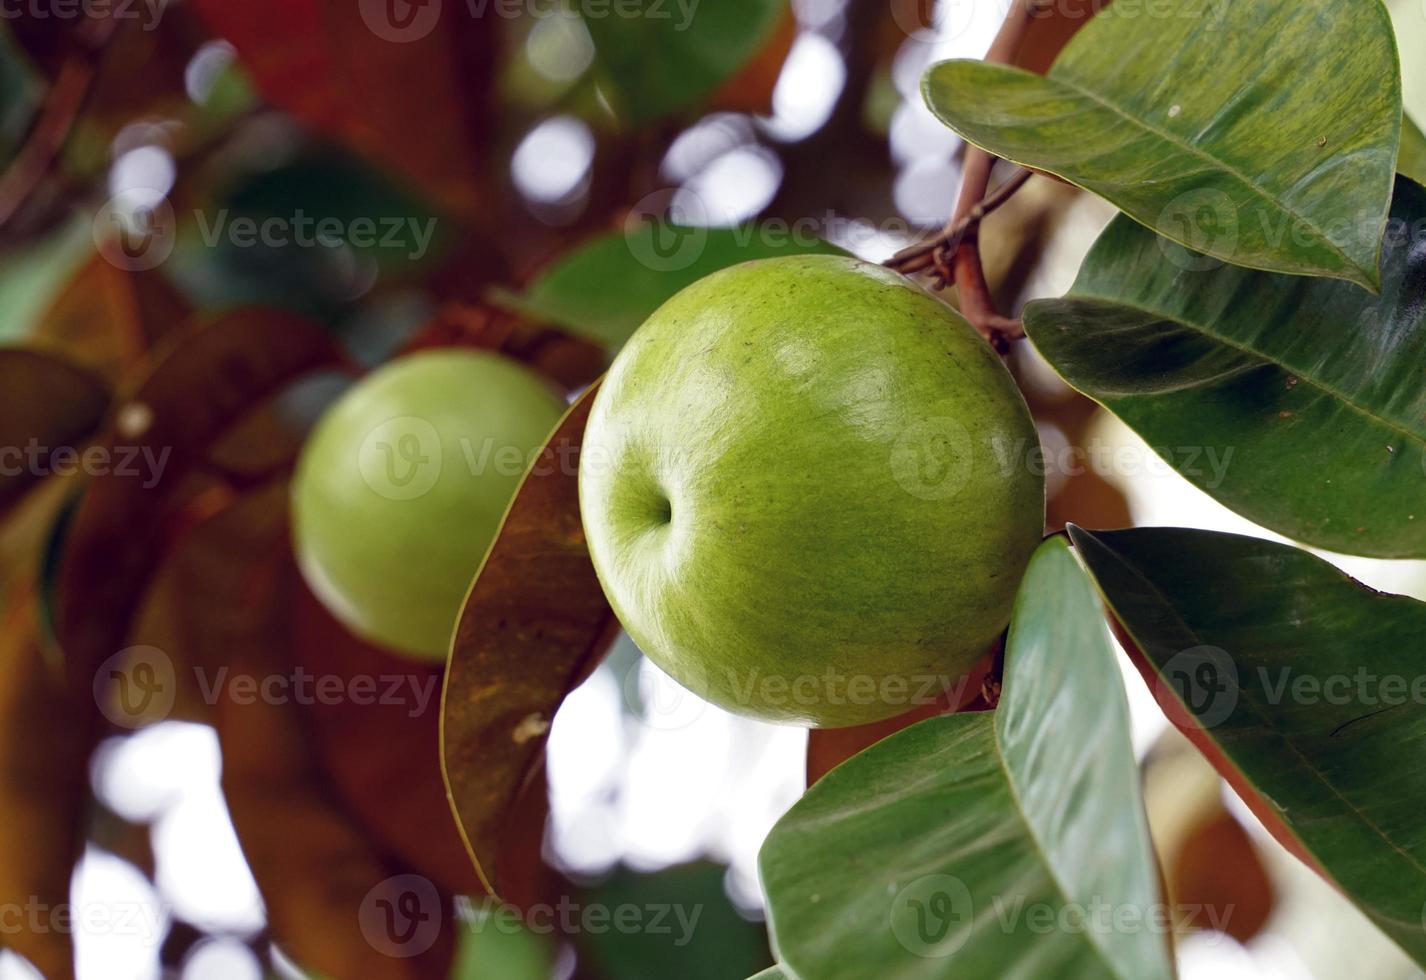 la fruta de la manzana estrella es una planta nativa. la cara es brillante, verde oscuro, la parte posterior es roja, brillante, fruta esférica, hay variedades verdes. amarillo y rojo púrpura, aroma dulce. comer fruta fresca. foto